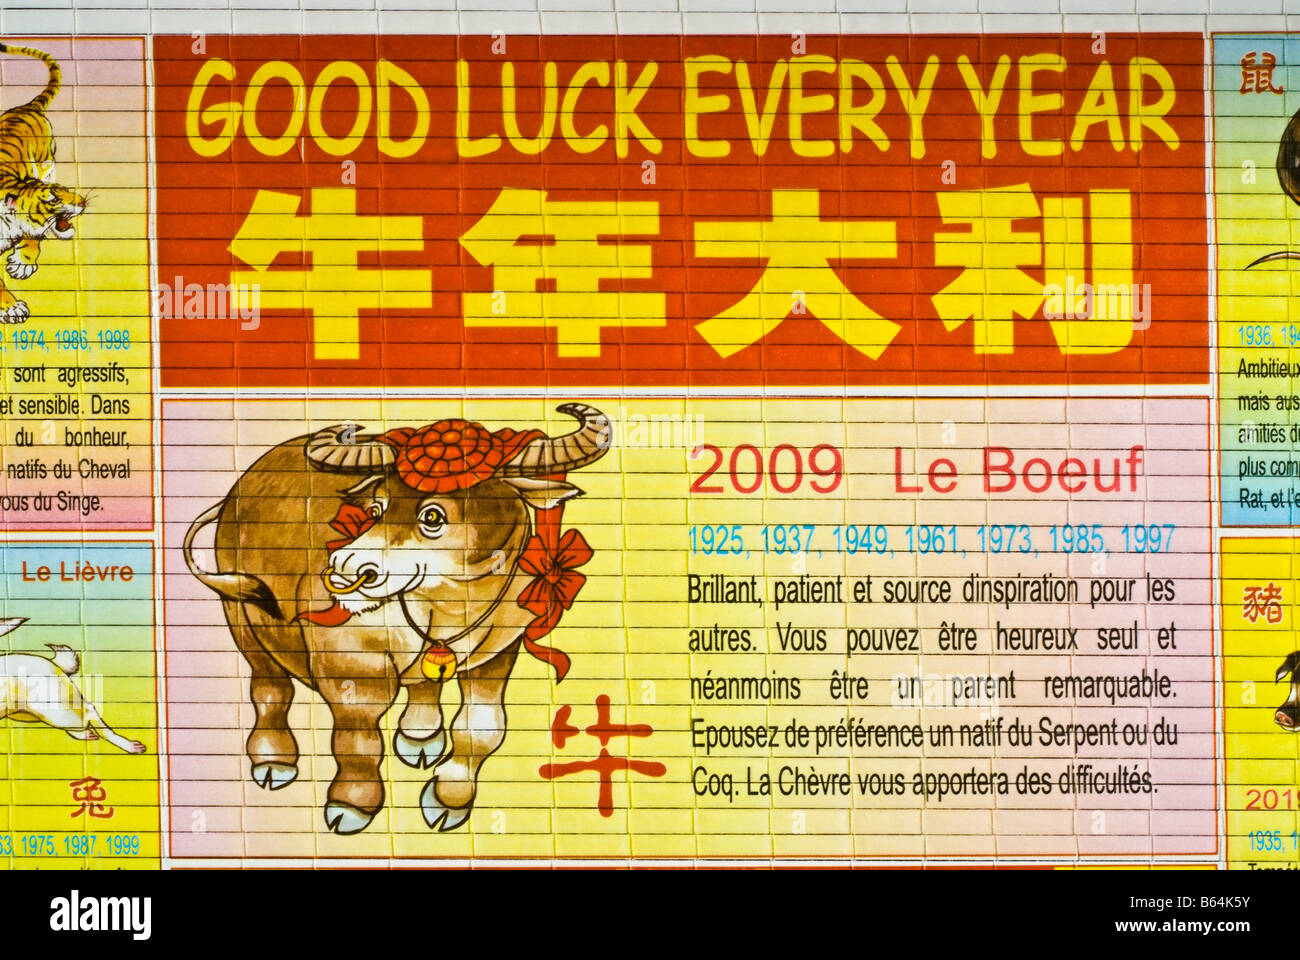 L'Art Contemporain Chinois 'calendrier astrologique chinois' 'Nouvel an chinois' avec des illustrations "Année de la vache' Zodiac Banque D'Images